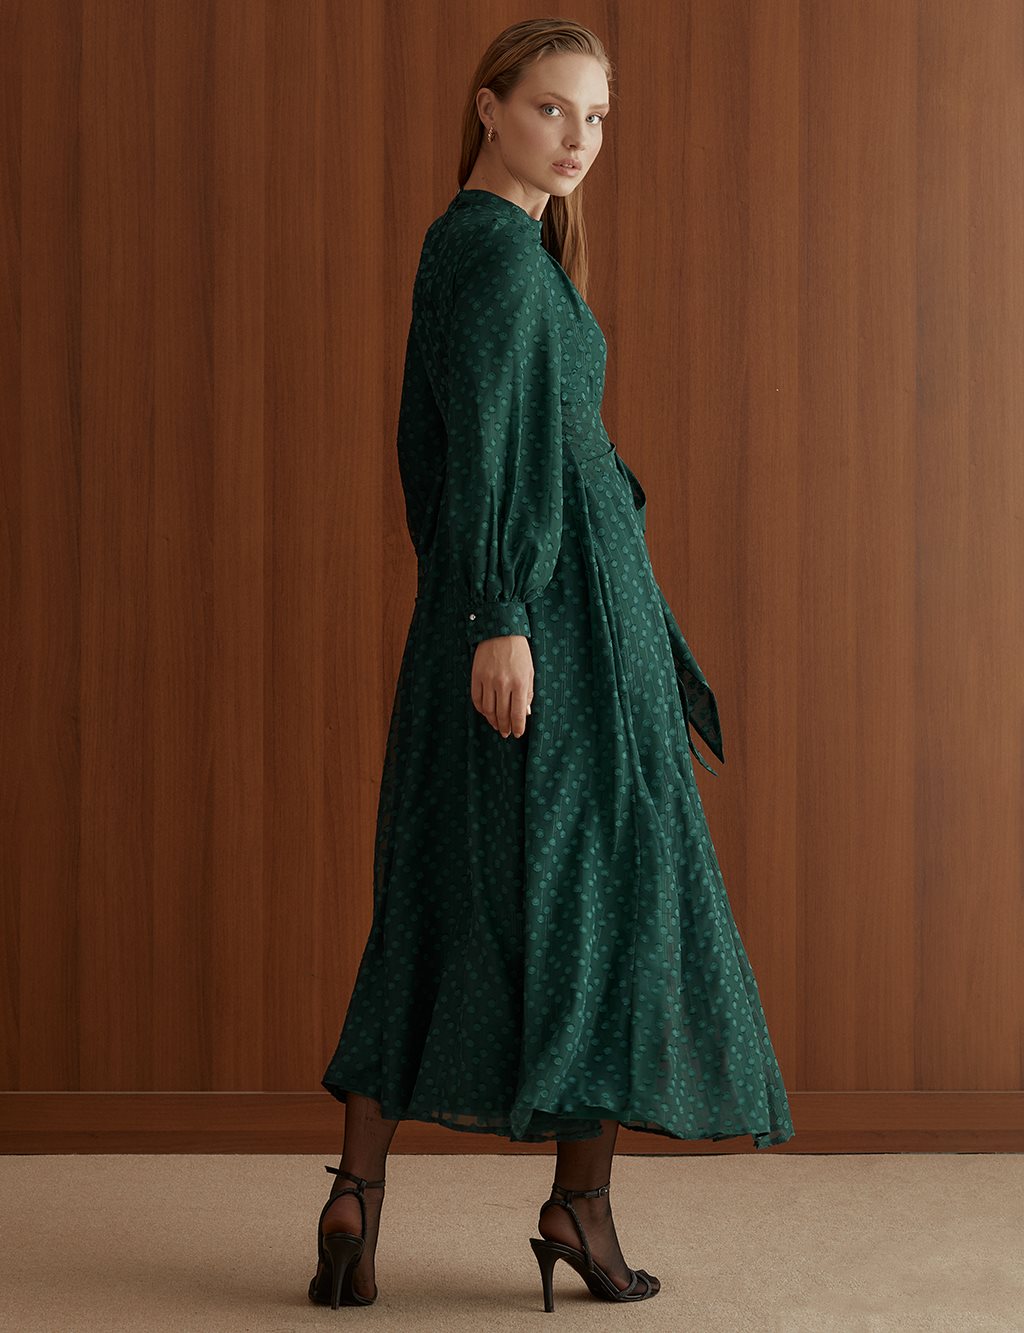 Pleated Full Length Dress Emerald ürünler defolu ürünlerdir bu nedenle satışa kapatılmıştır